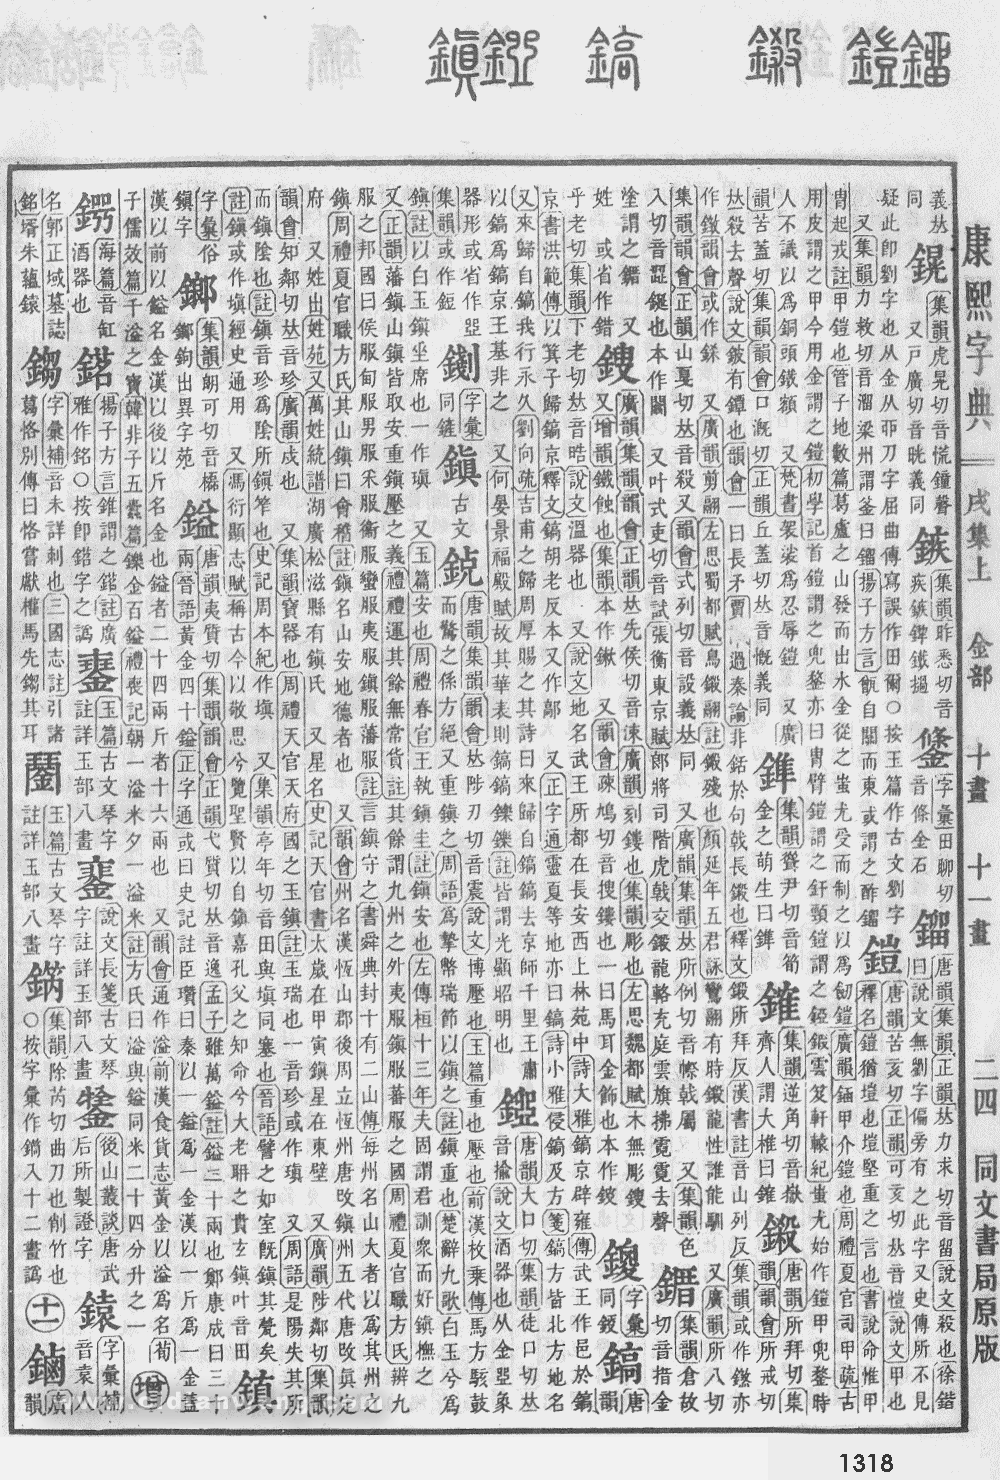 康熙字典掃描版第1318頁